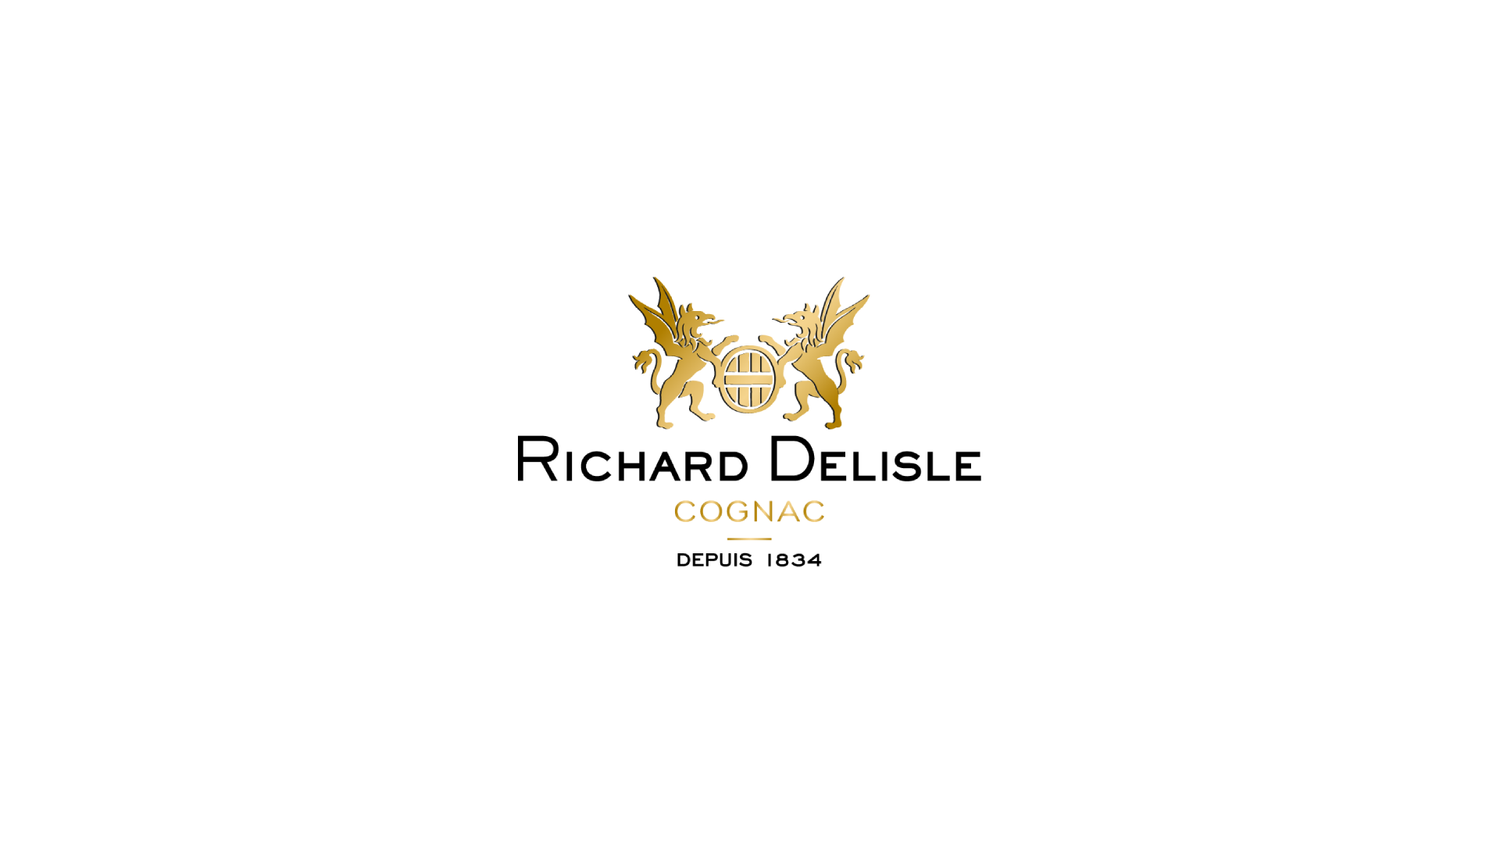 Richard Delisle